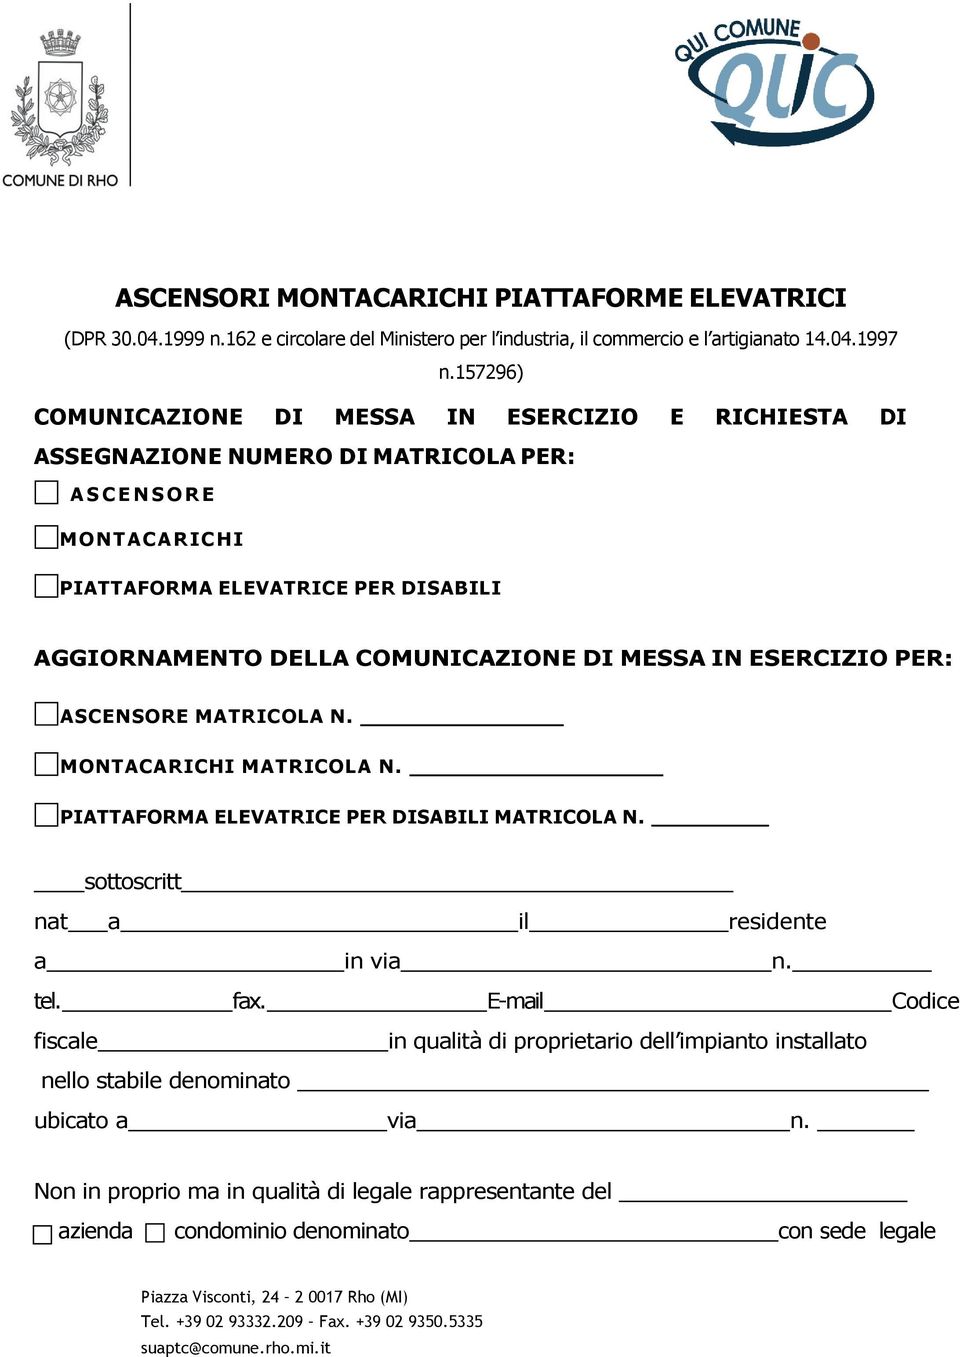 COMUNICAZIONE DI MESSA IN ESERCIZIO PER: ASCENSORE MATRICOLA N. MONT AC ARI C H I MAT RI C OL A N. PIATTAFORMA ELEVATRICE PER DISABILI MATRICOLA N. sottoscritt nat a il residente a in via n. tel. fax.